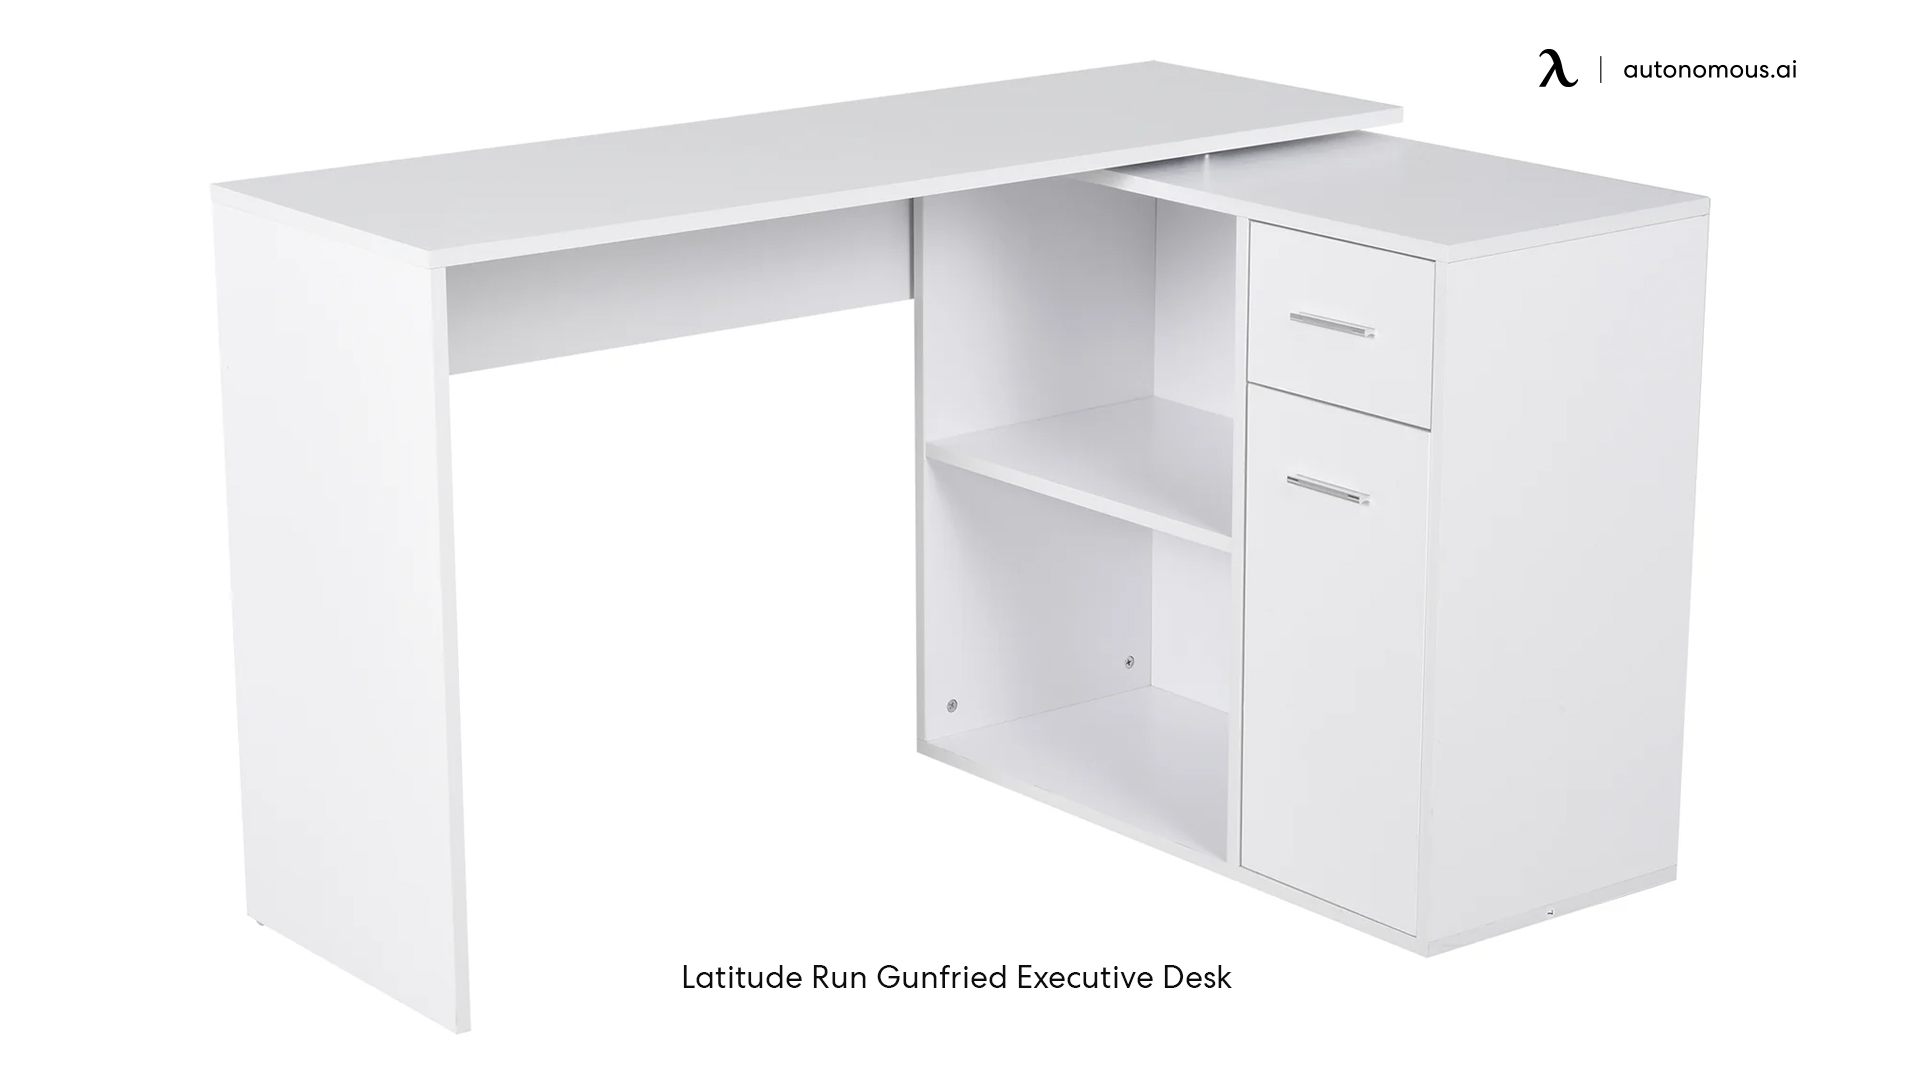 Latitude Run Gunfried Executive Desk